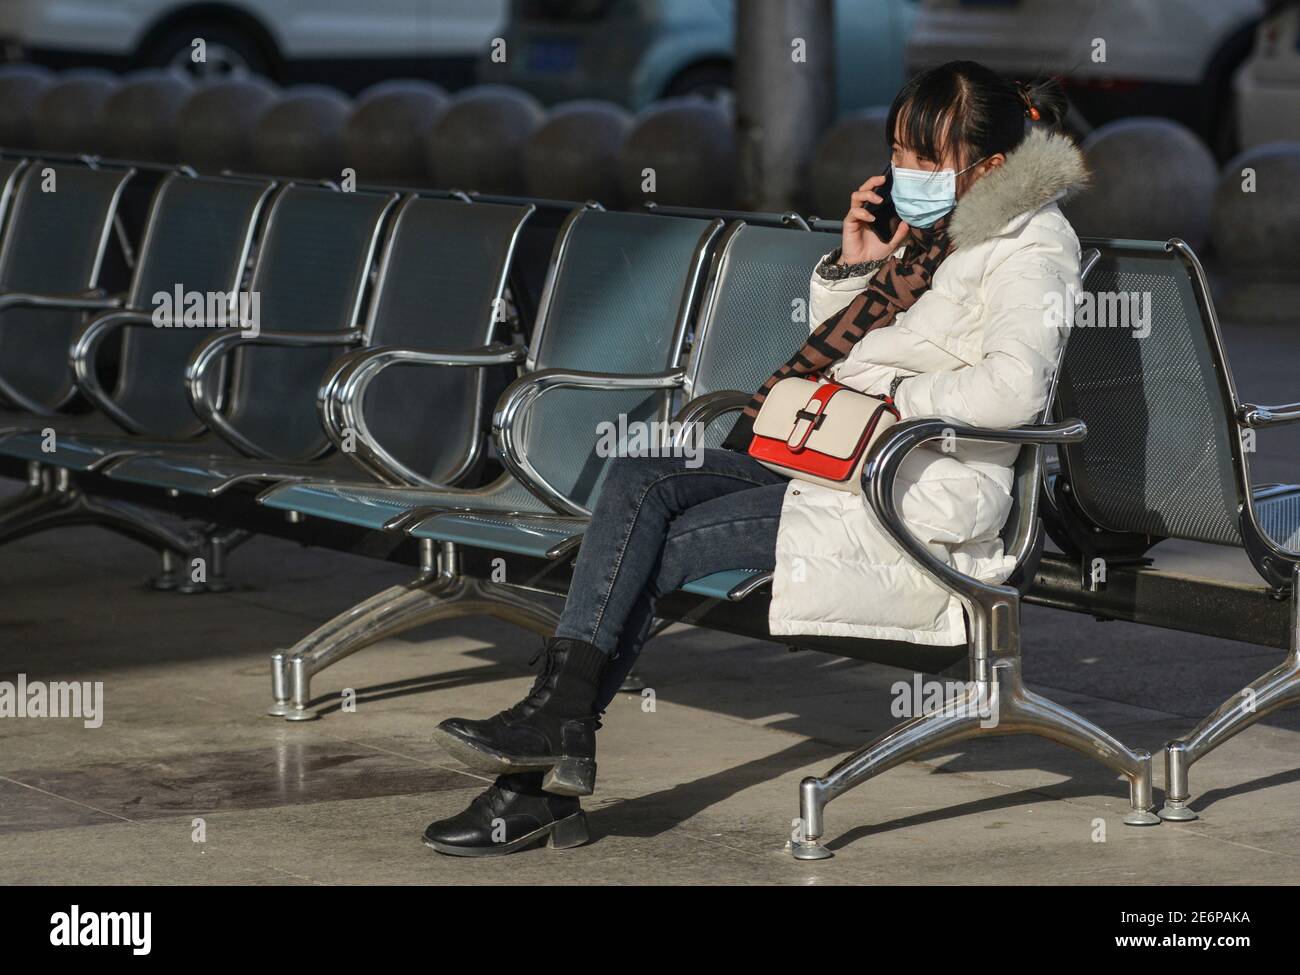 Fuyang, China. Januar 2021. Eine Fahrerin wartet am Telefon, bevor sie ihren Zug am Bahnhof von Fuyang nimmt.als die Reisestrequenz des Frühlingsfestes begann, haben die Transportunternehmen die Maßnahmen verschärft, um das Wiederaufleben von COVID-19 (Coronavirus) Fällen zu verhindern, indem sie die Gesichtsmask für alle Passagiere im Bahnhof obligatorisch machen. Rund 1.15 Milliarden Passagierfahrten wurden während der 40-tägigen Reiseansturm erwartet, ein Rückgang gegenüber dem Vorjahr von 20 Prozent und mehr als 60 Prozent weniger als im Jahr 2019 nach Angaben des Ministeriums. Kredit: SOPA Images Limited/Alamy Live Nachrichten Stockfoto